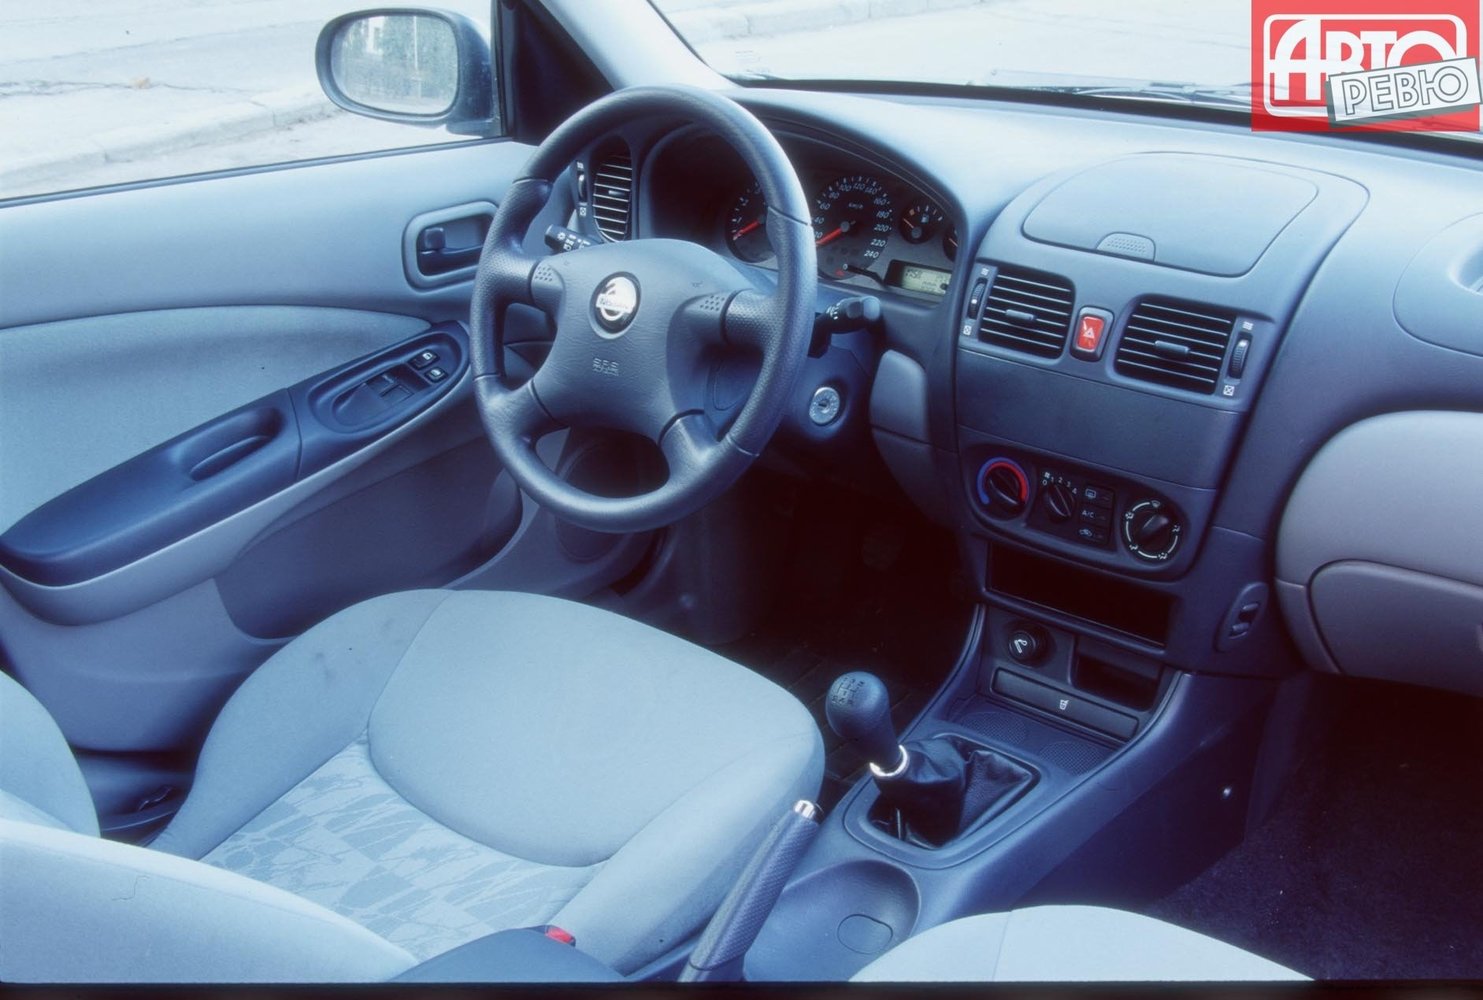 хэтчбек 3 дв. Nissan Almera 2000 - 2003г выпуска модификация 1.5 MT (90 л.с.)